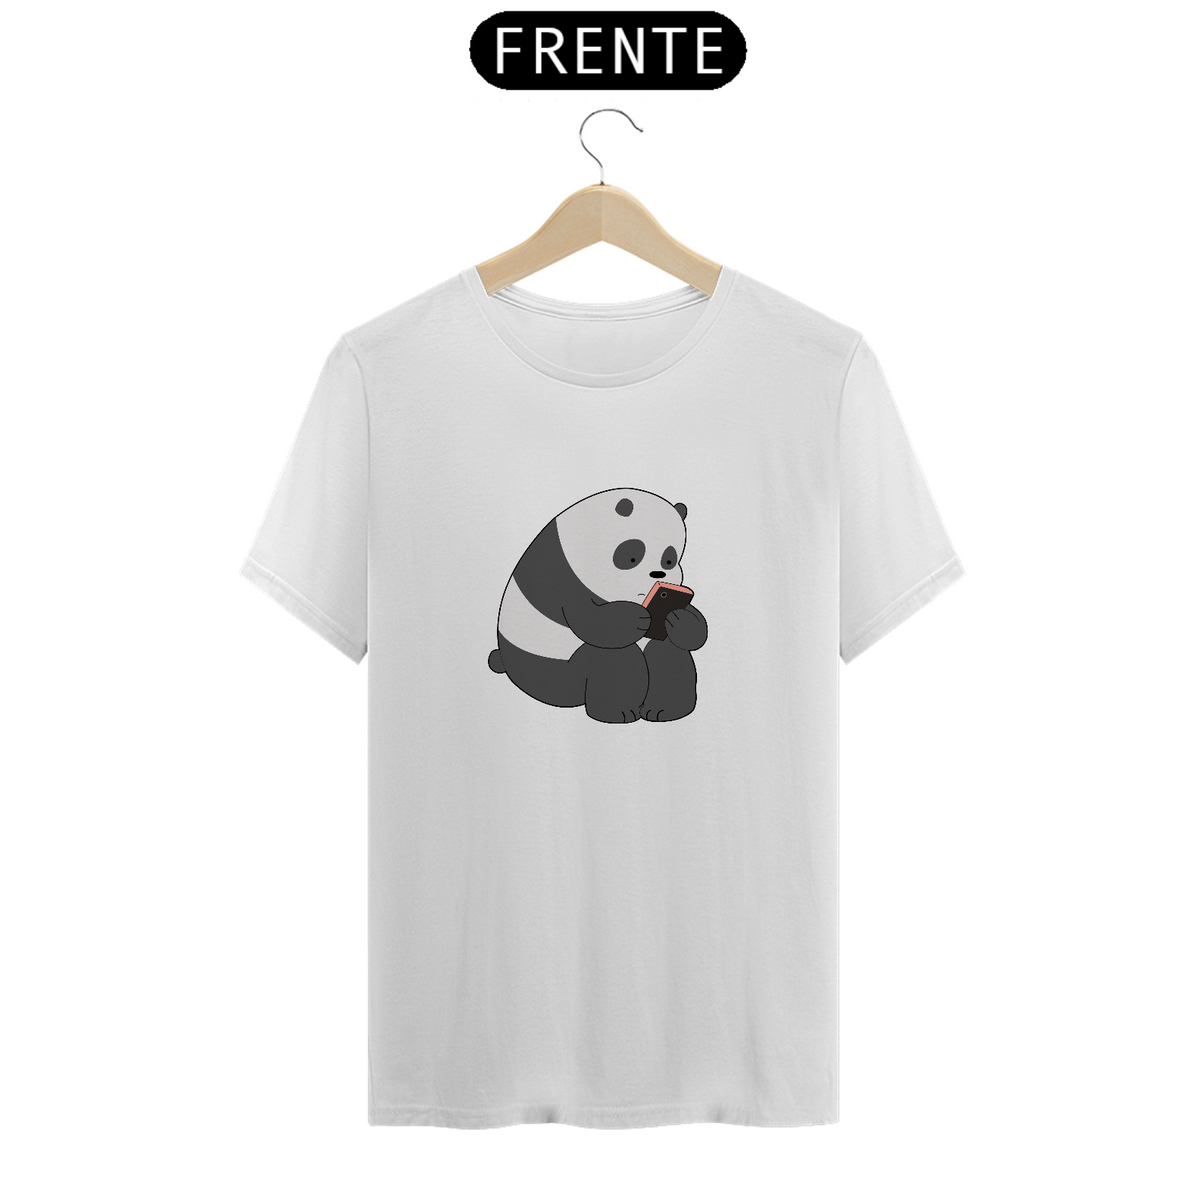 Nome do produto: Camiseta - Panda / Ursos sem curso